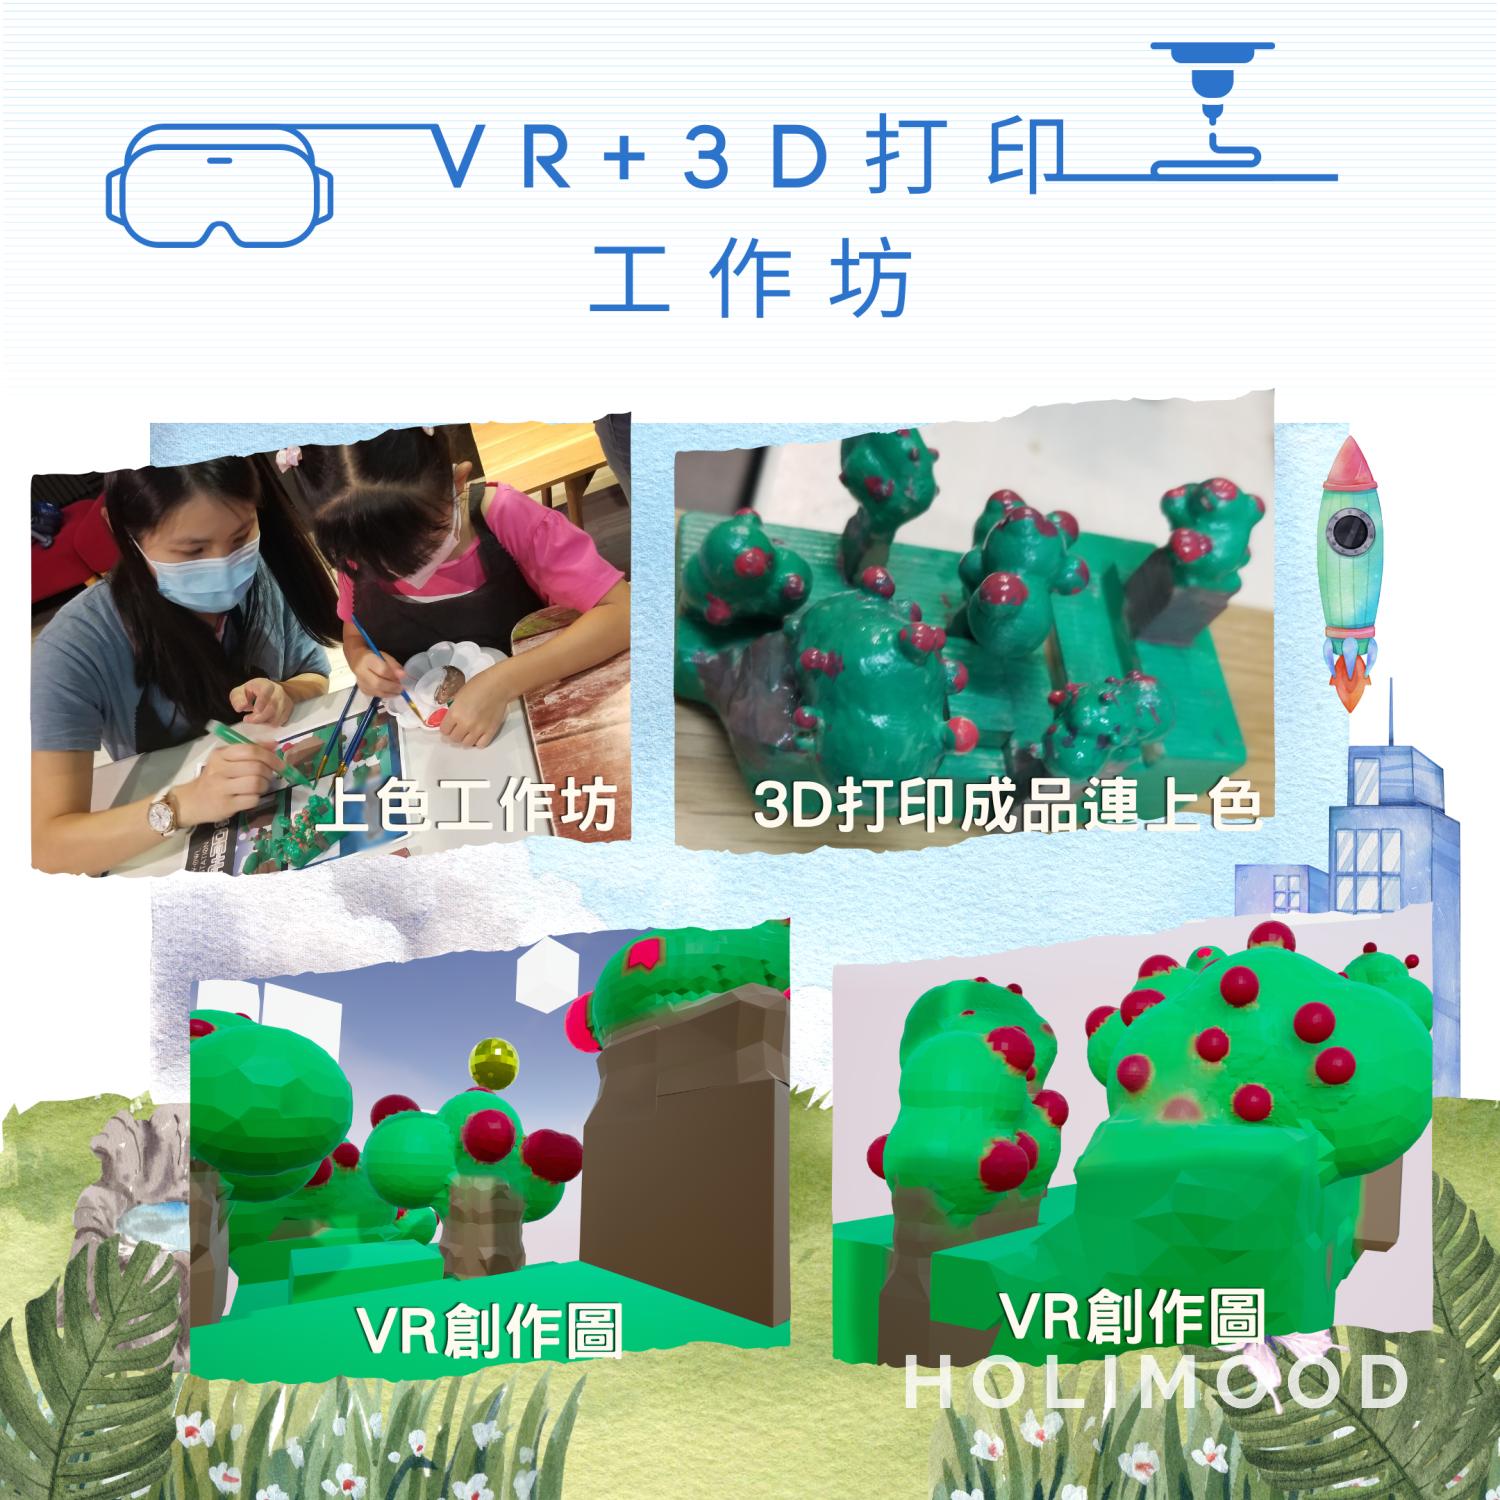 V-Owl Station VR Party 虛擬實境體驗站 VR+3D打印工作坊 5